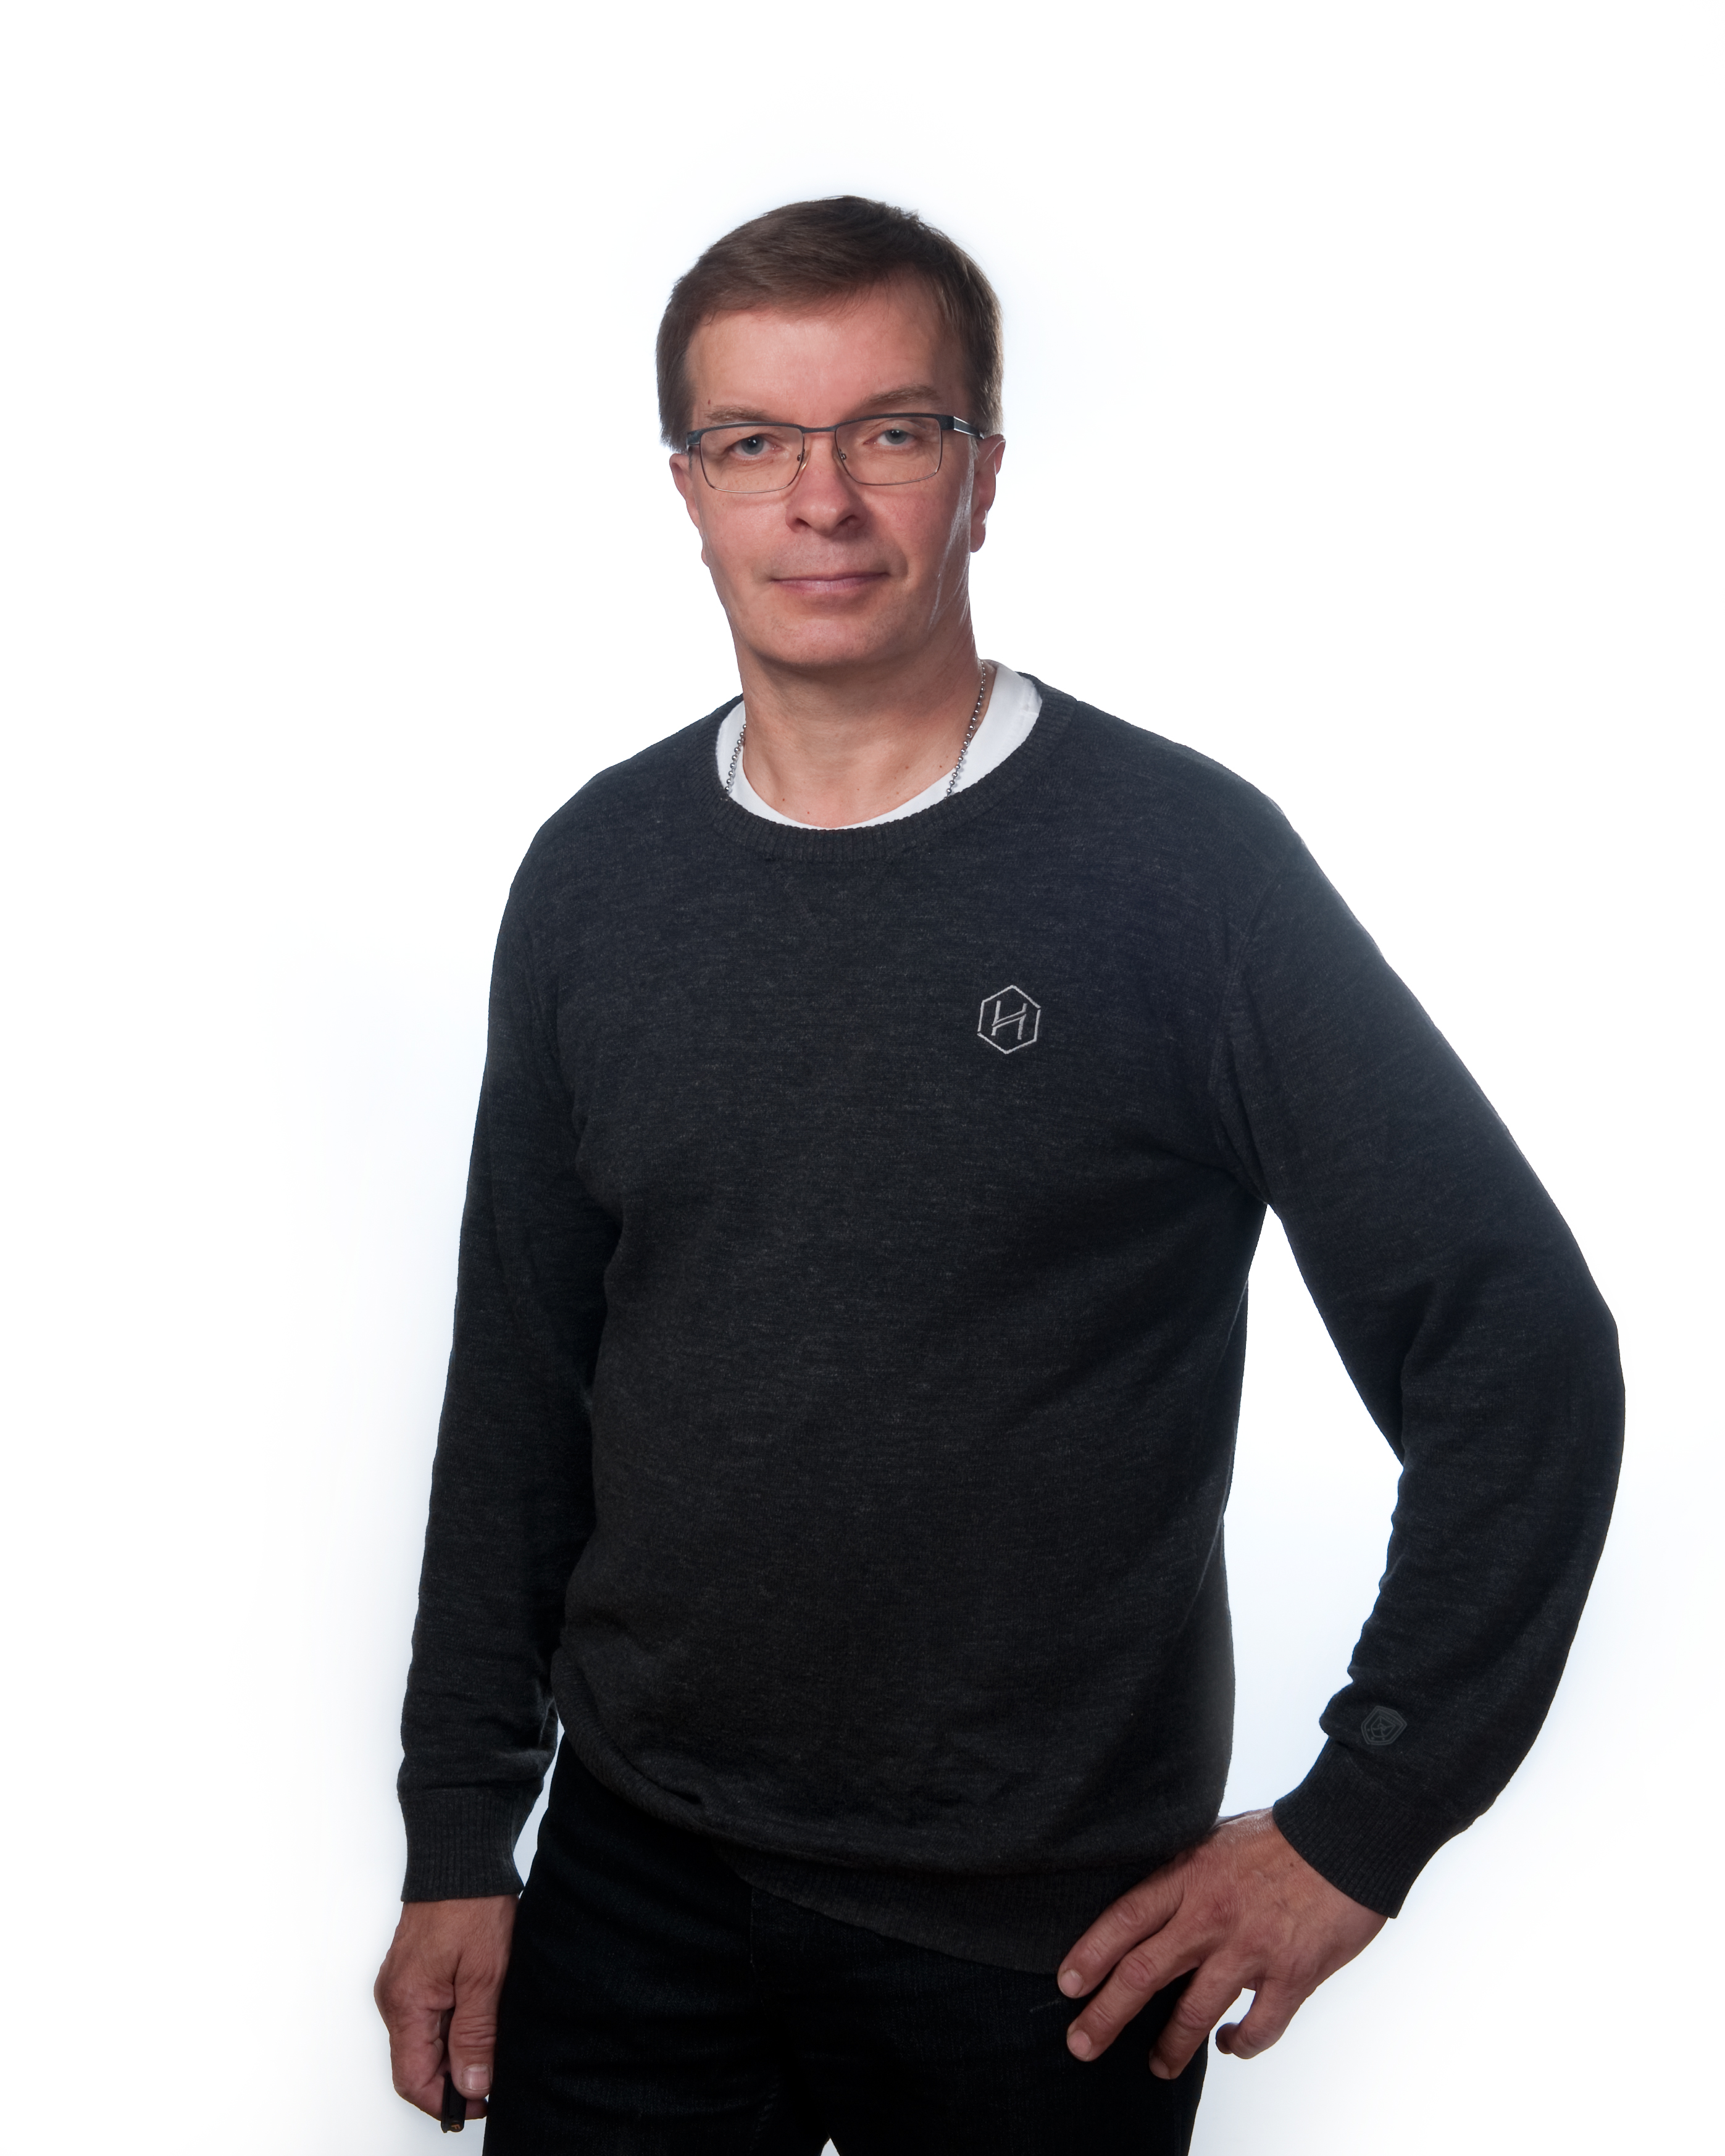 Picture of Pekka Lustig